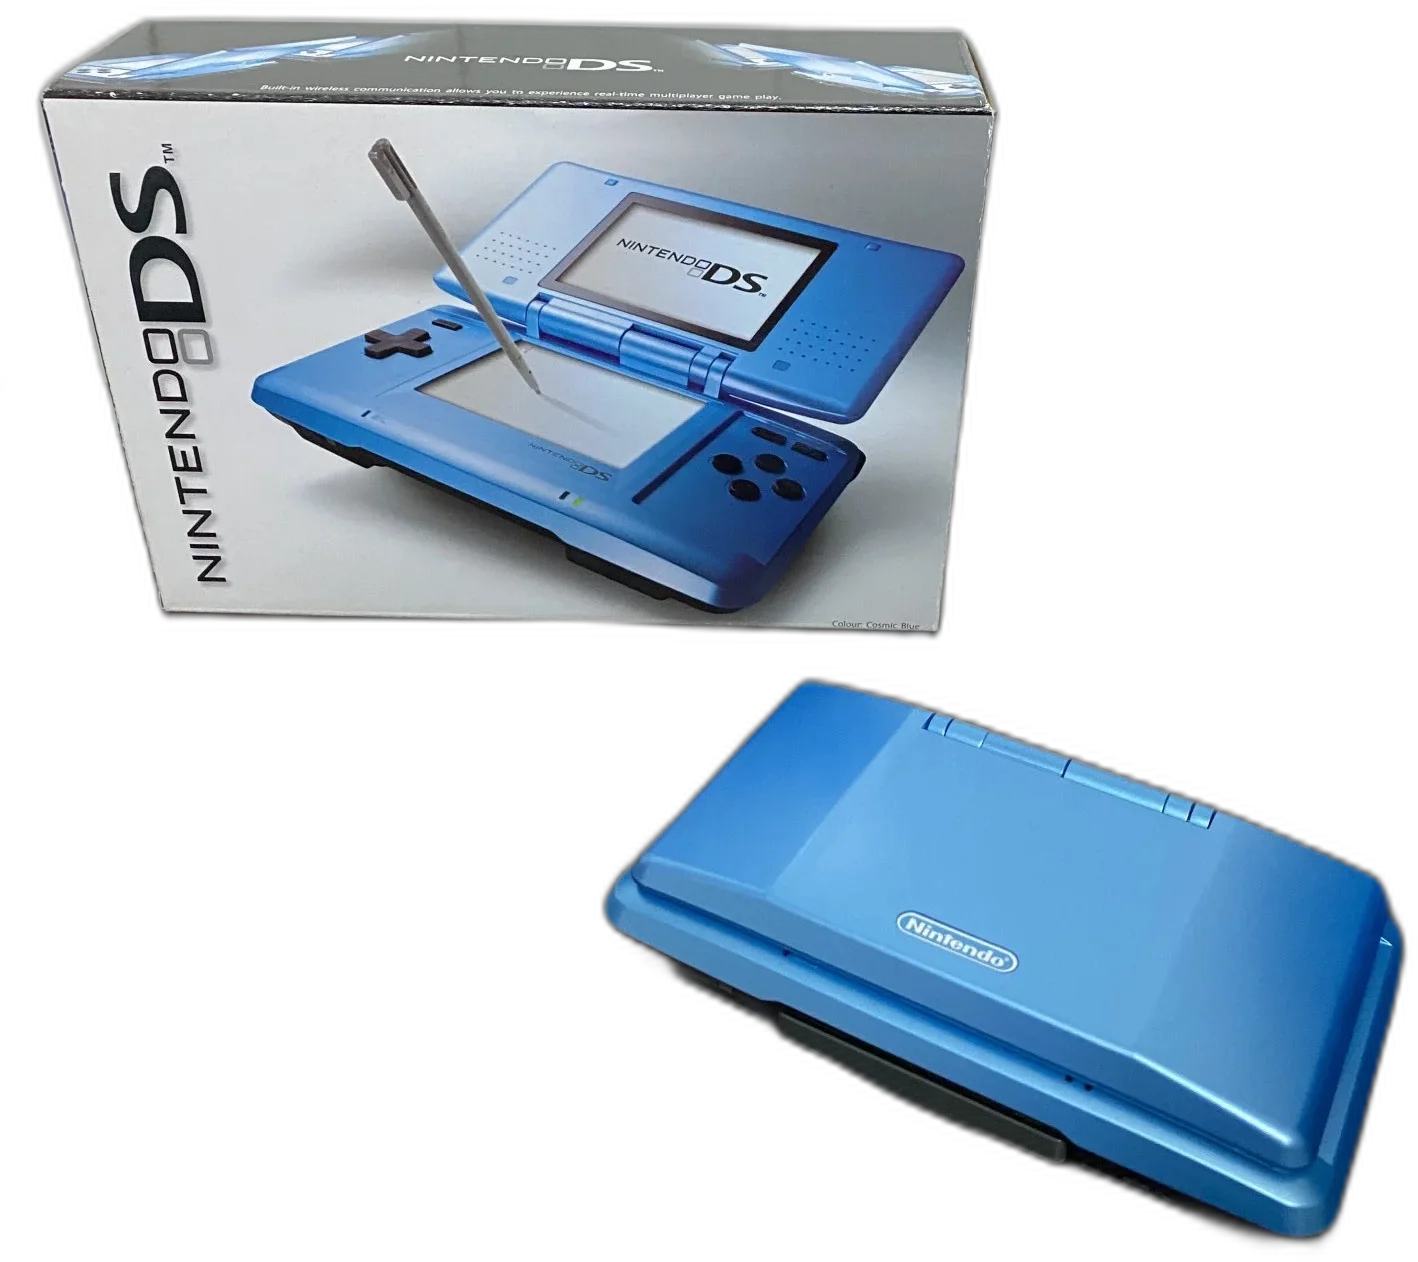  Nintendo DS Cosmic Blue Console [AUS]